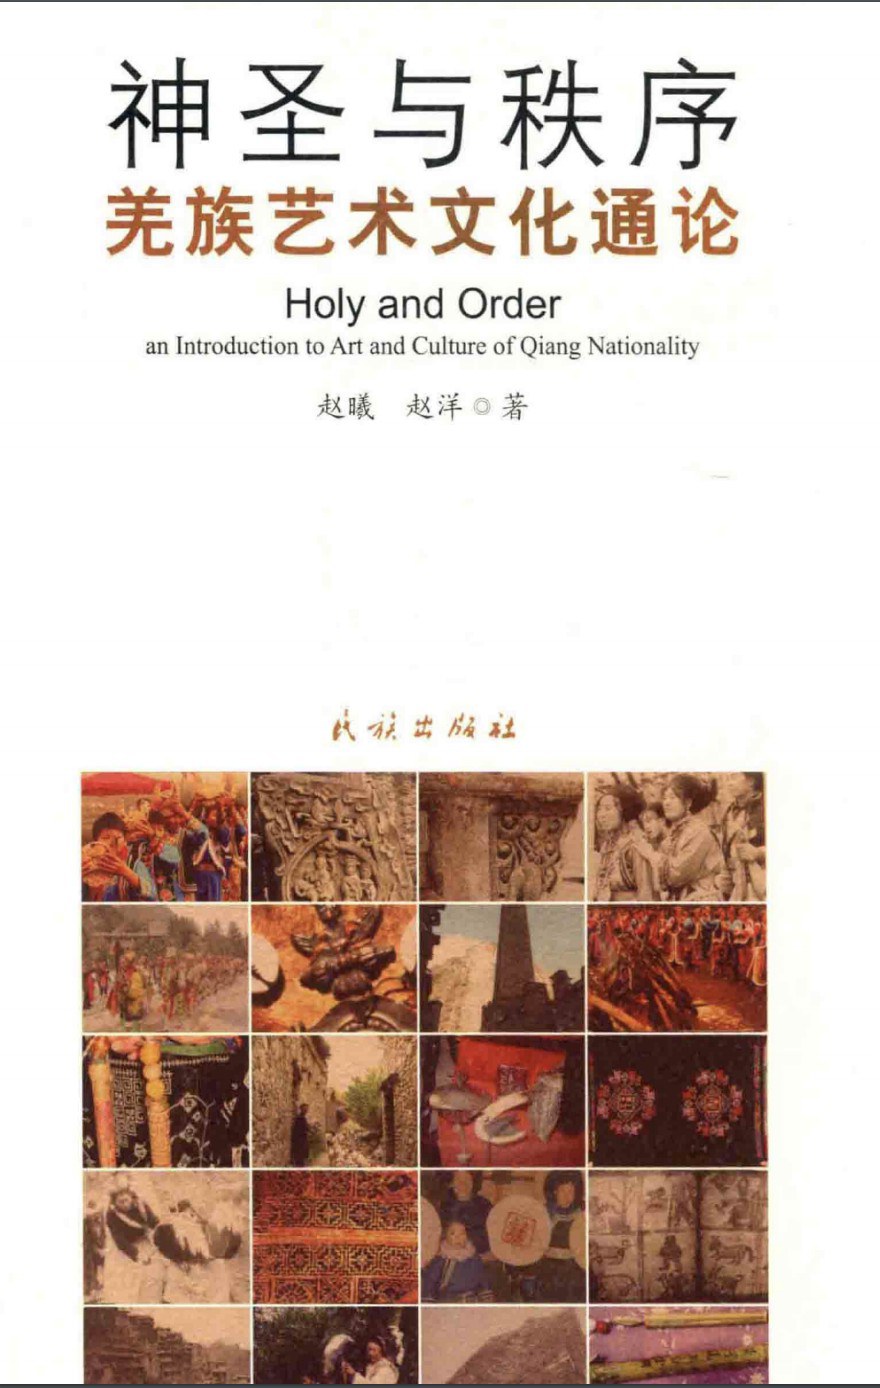 神圣与秩序 羌族艺术文化通论 an introduction to art and culture of Qiang nationality